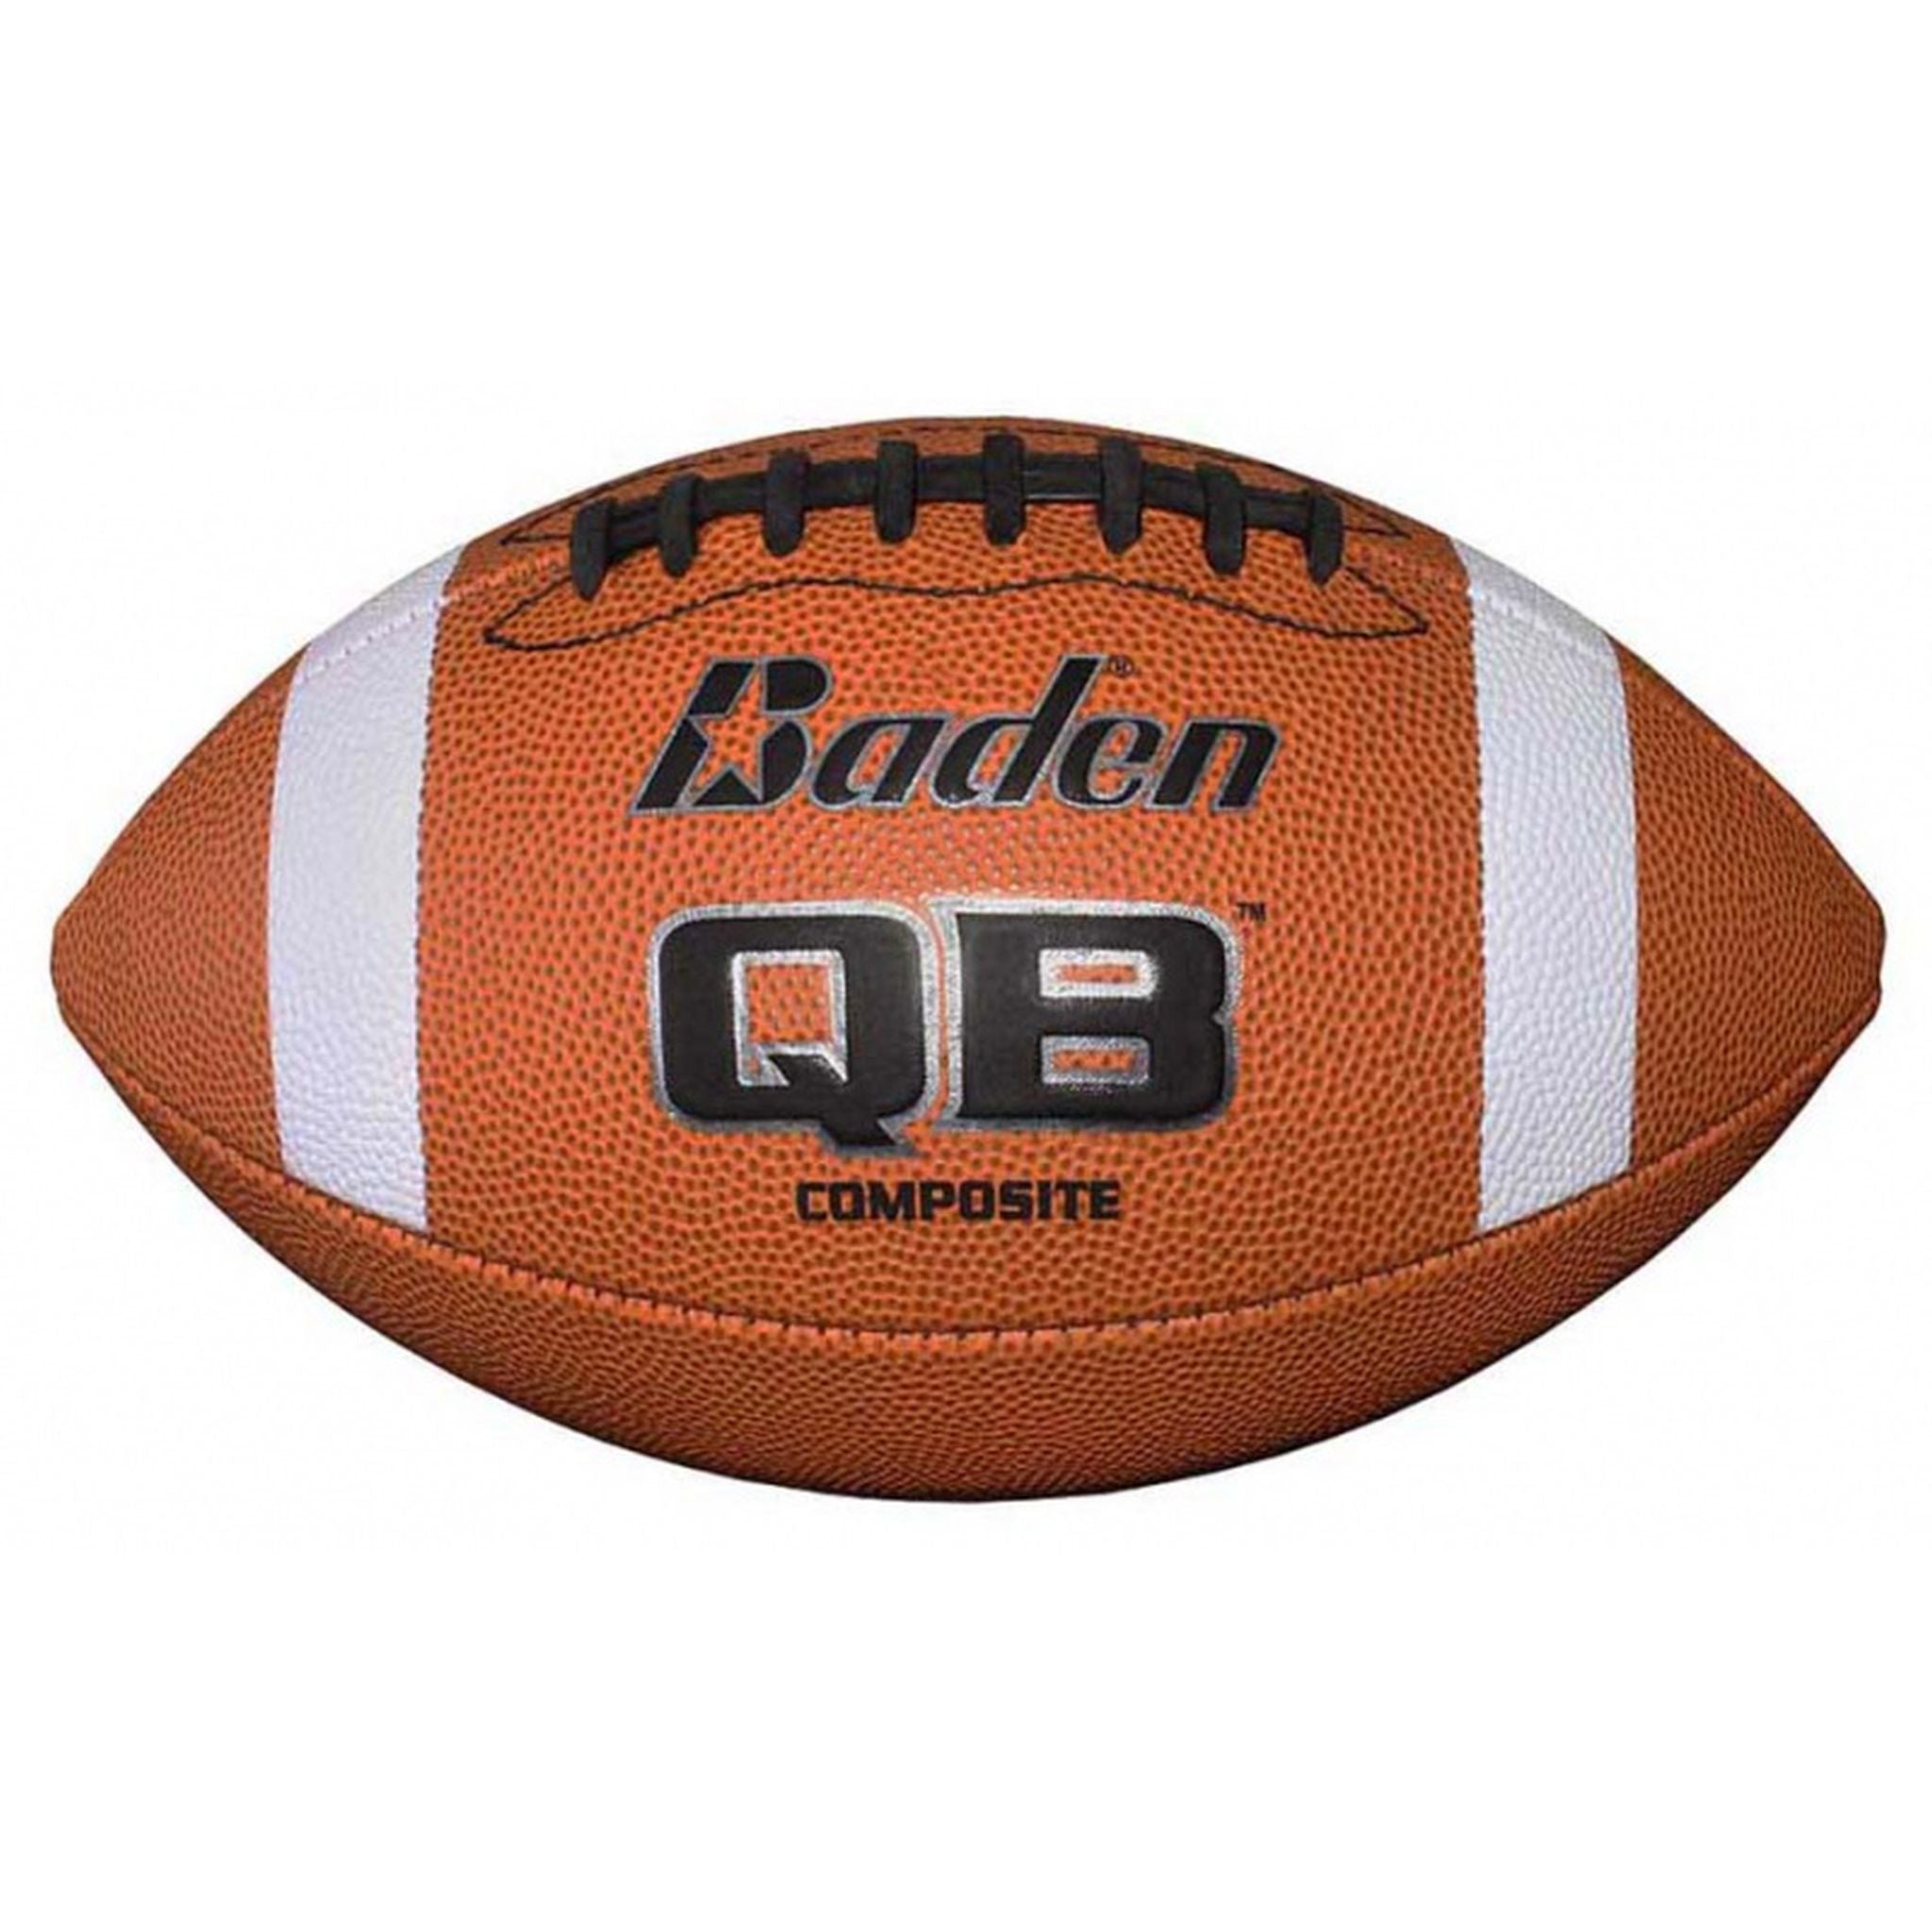 Baden QB Composite American Football